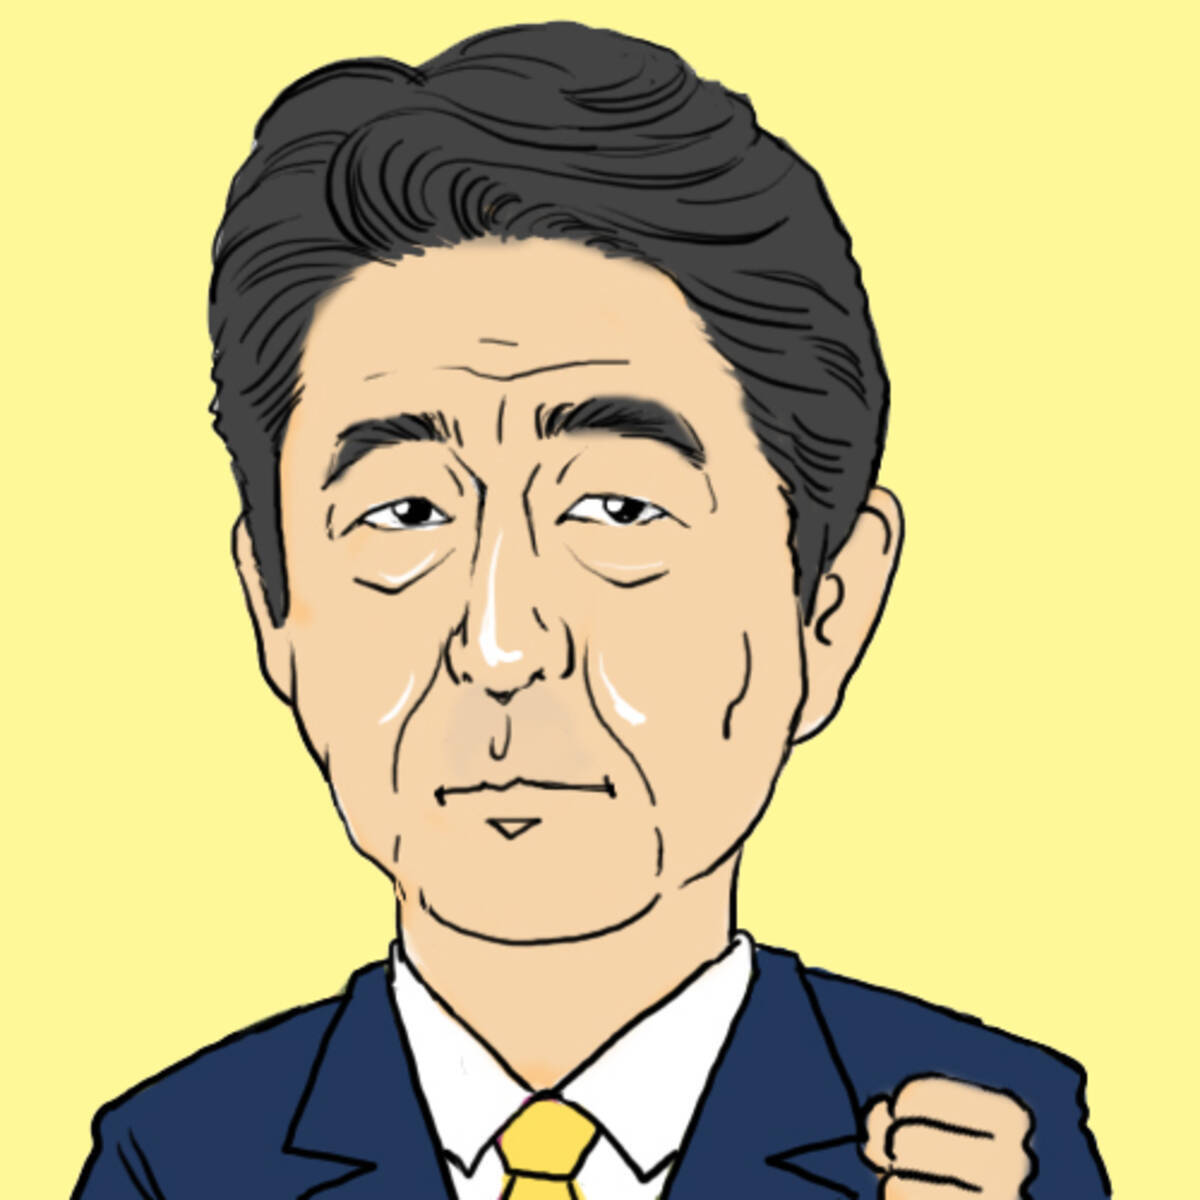 ベスト コロナ 安倍 総理 イラスト 100 ベストミキシング写真 イラストレーション